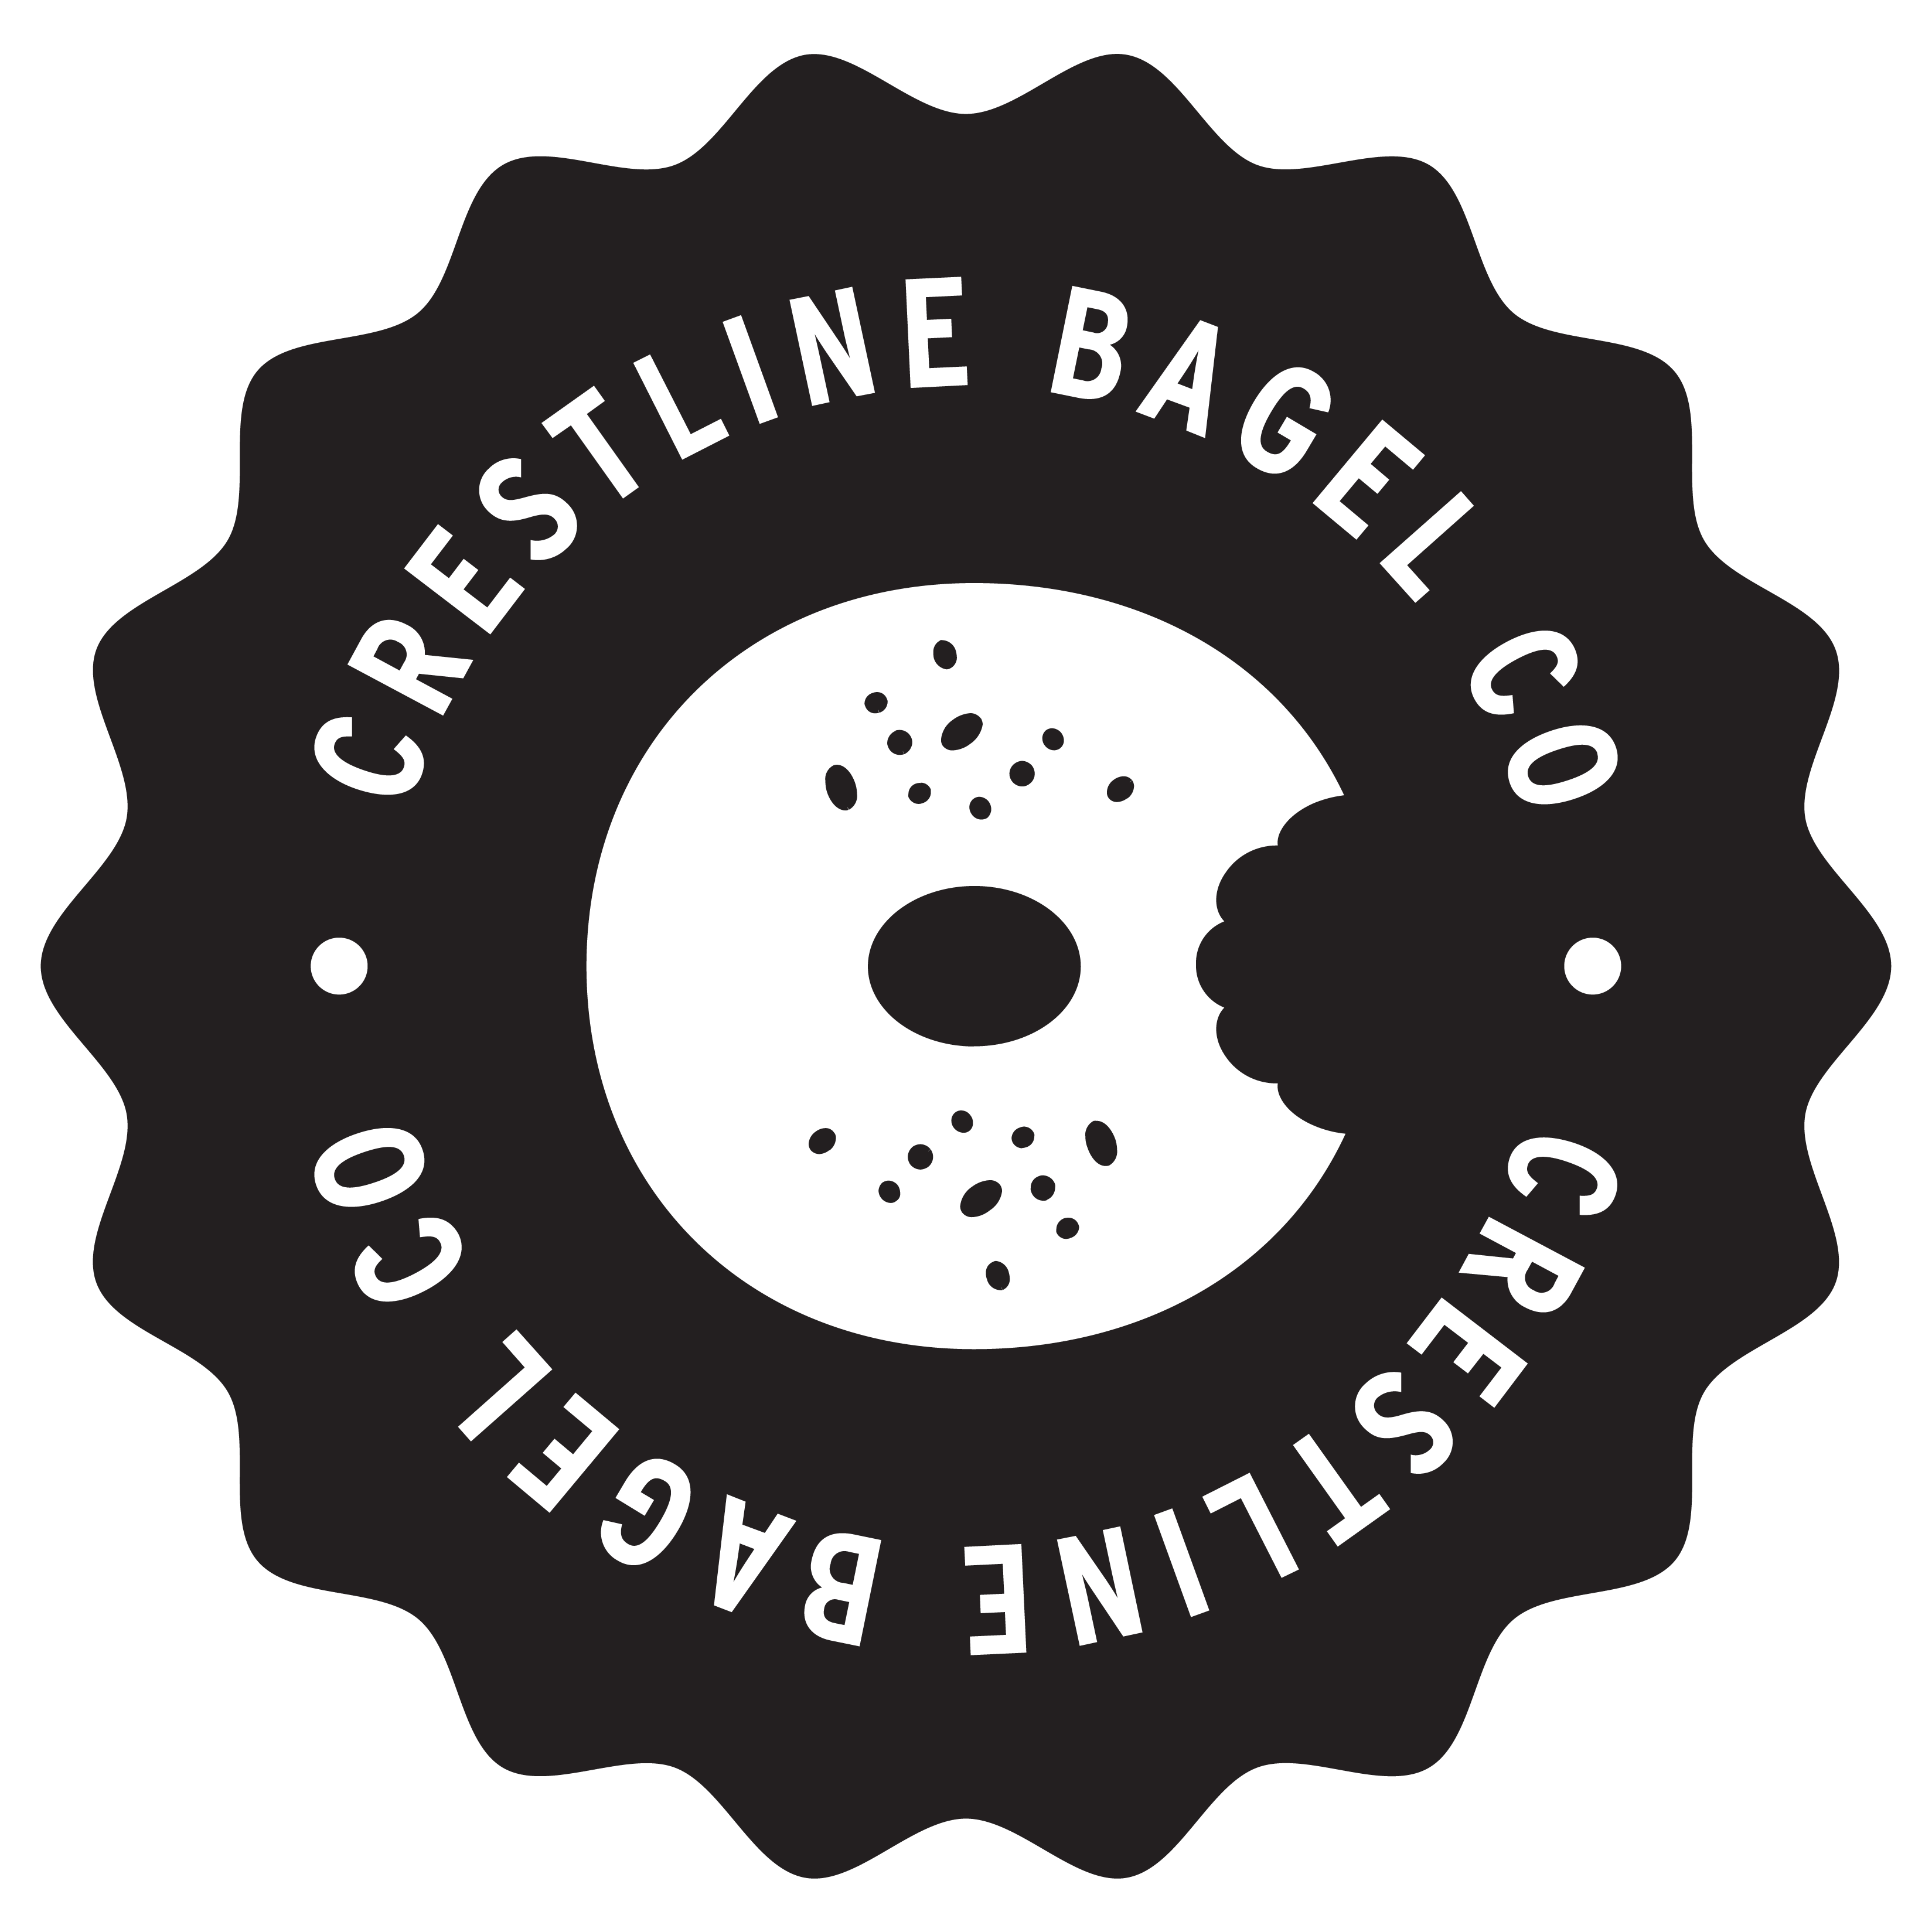 crestline bagel app logo